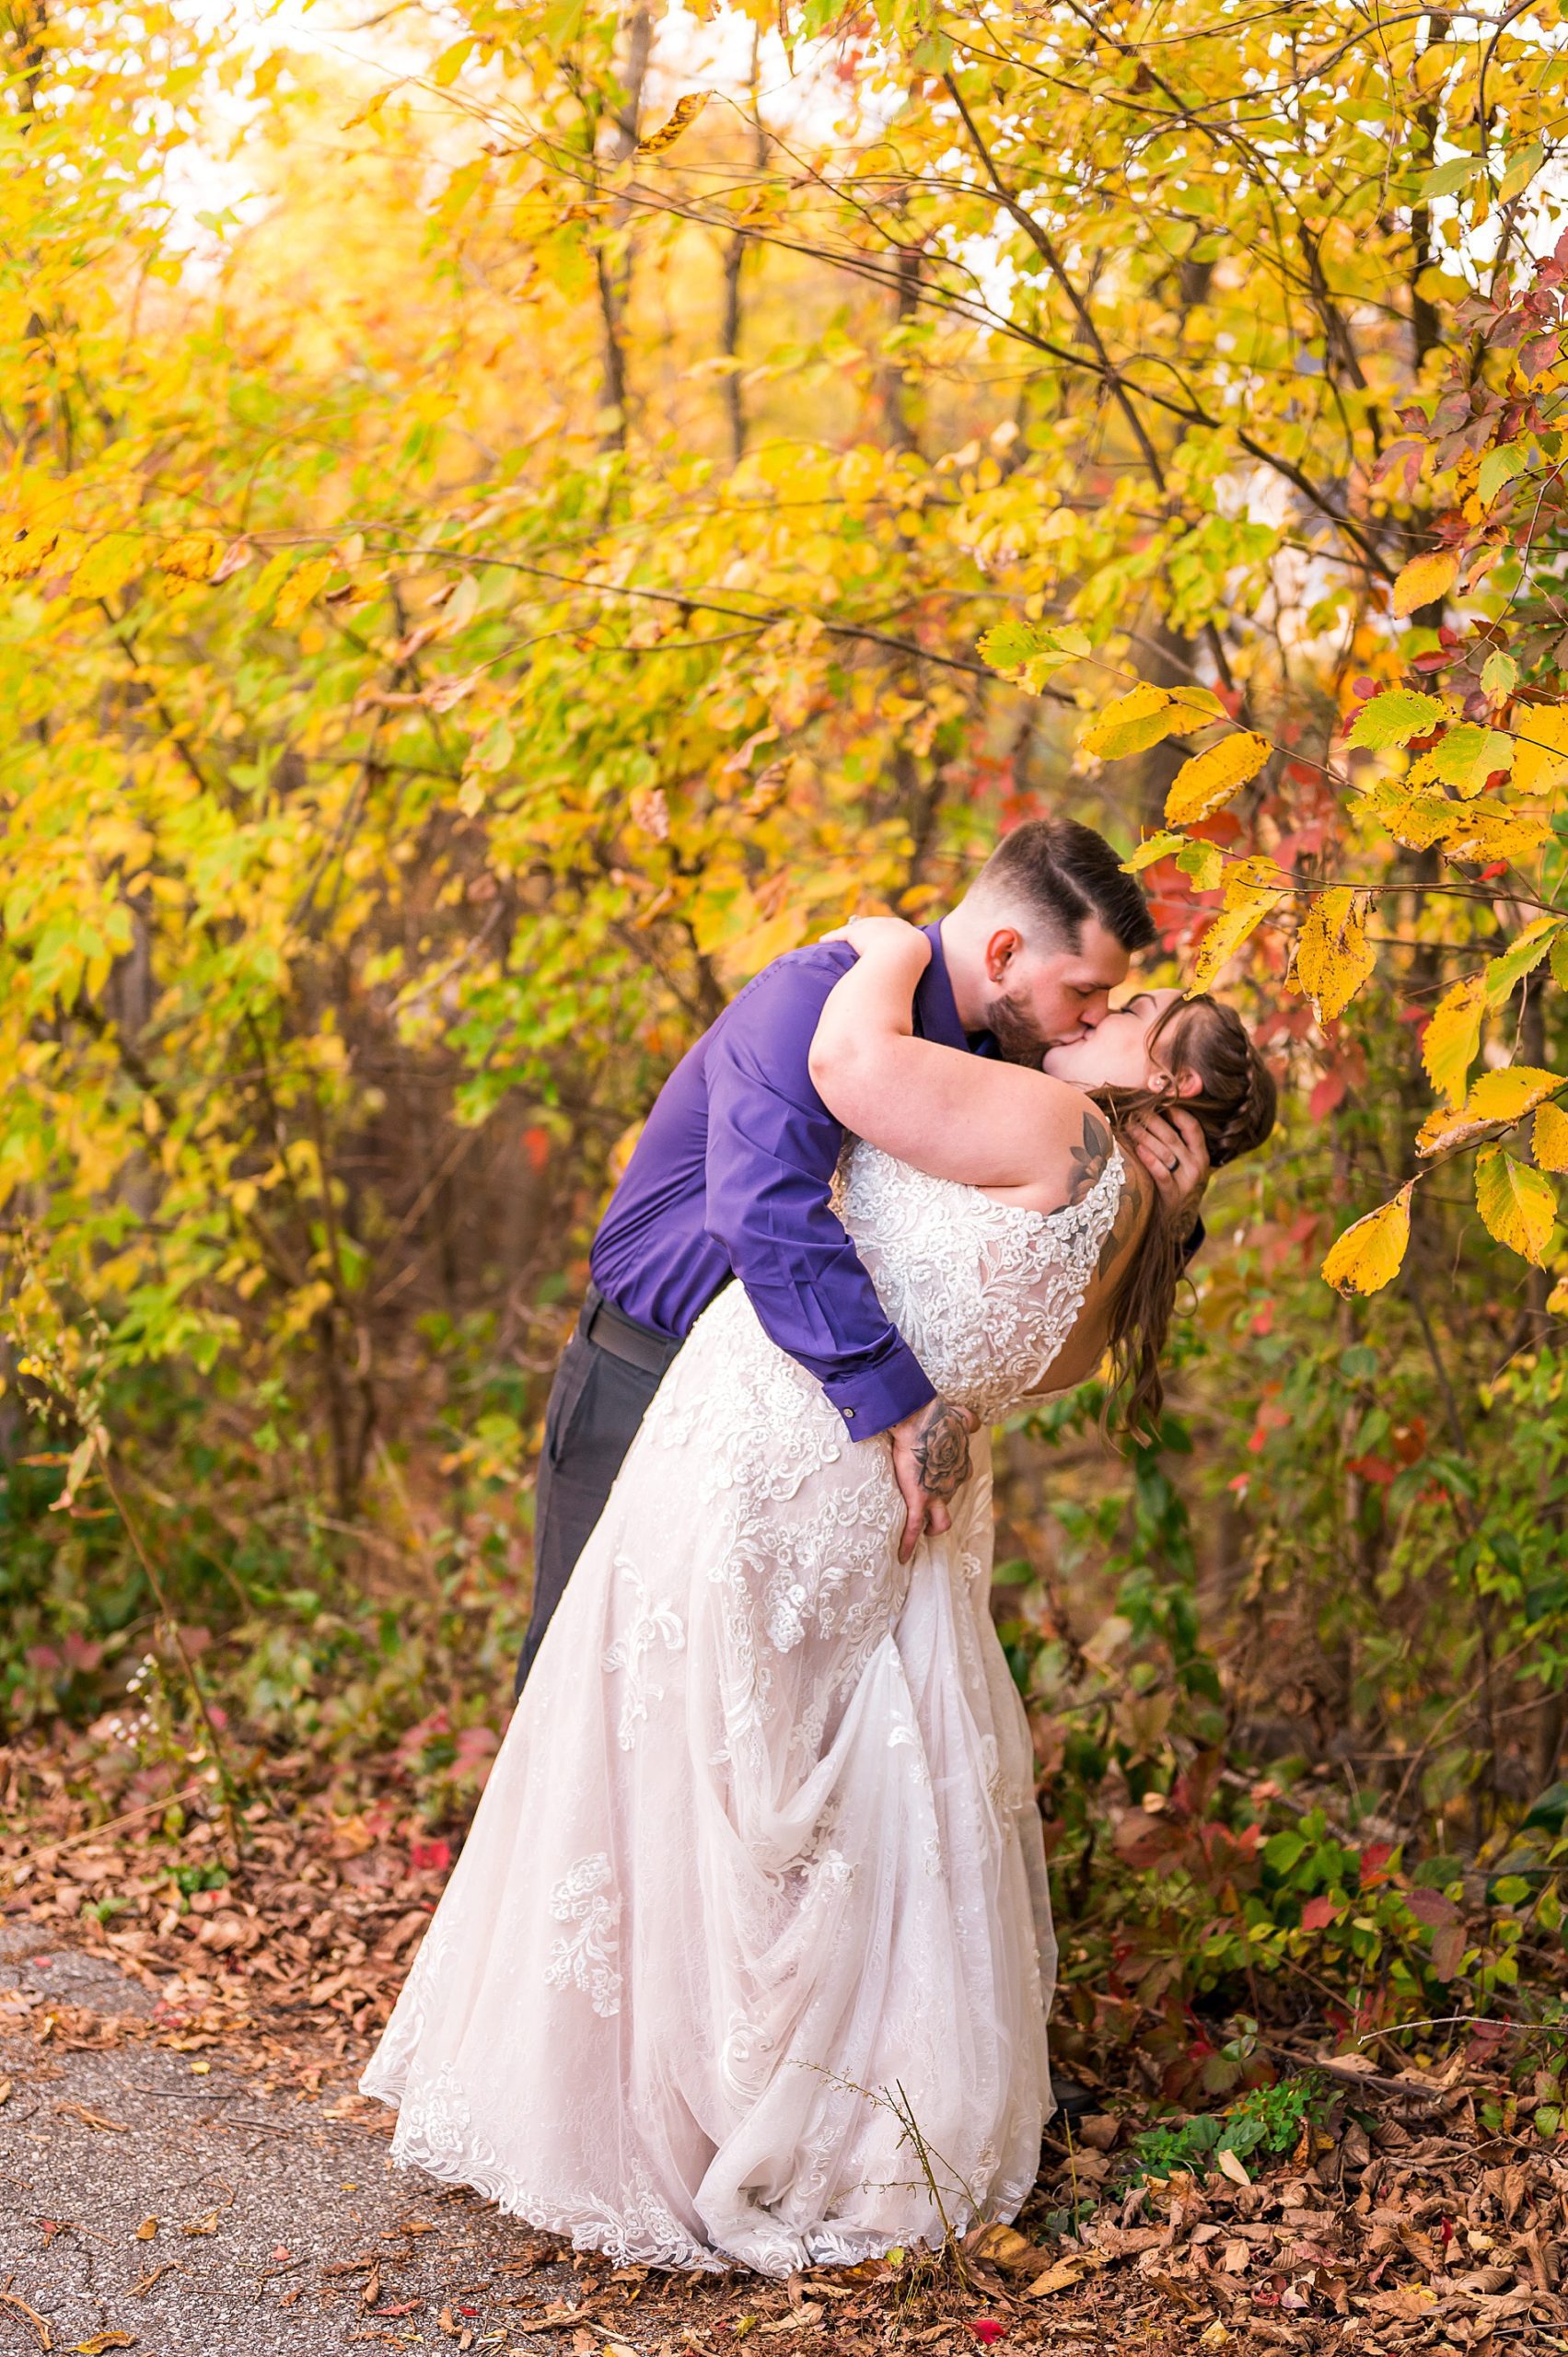 newlyweds kiss after Intimate Backyard Fall Wedding